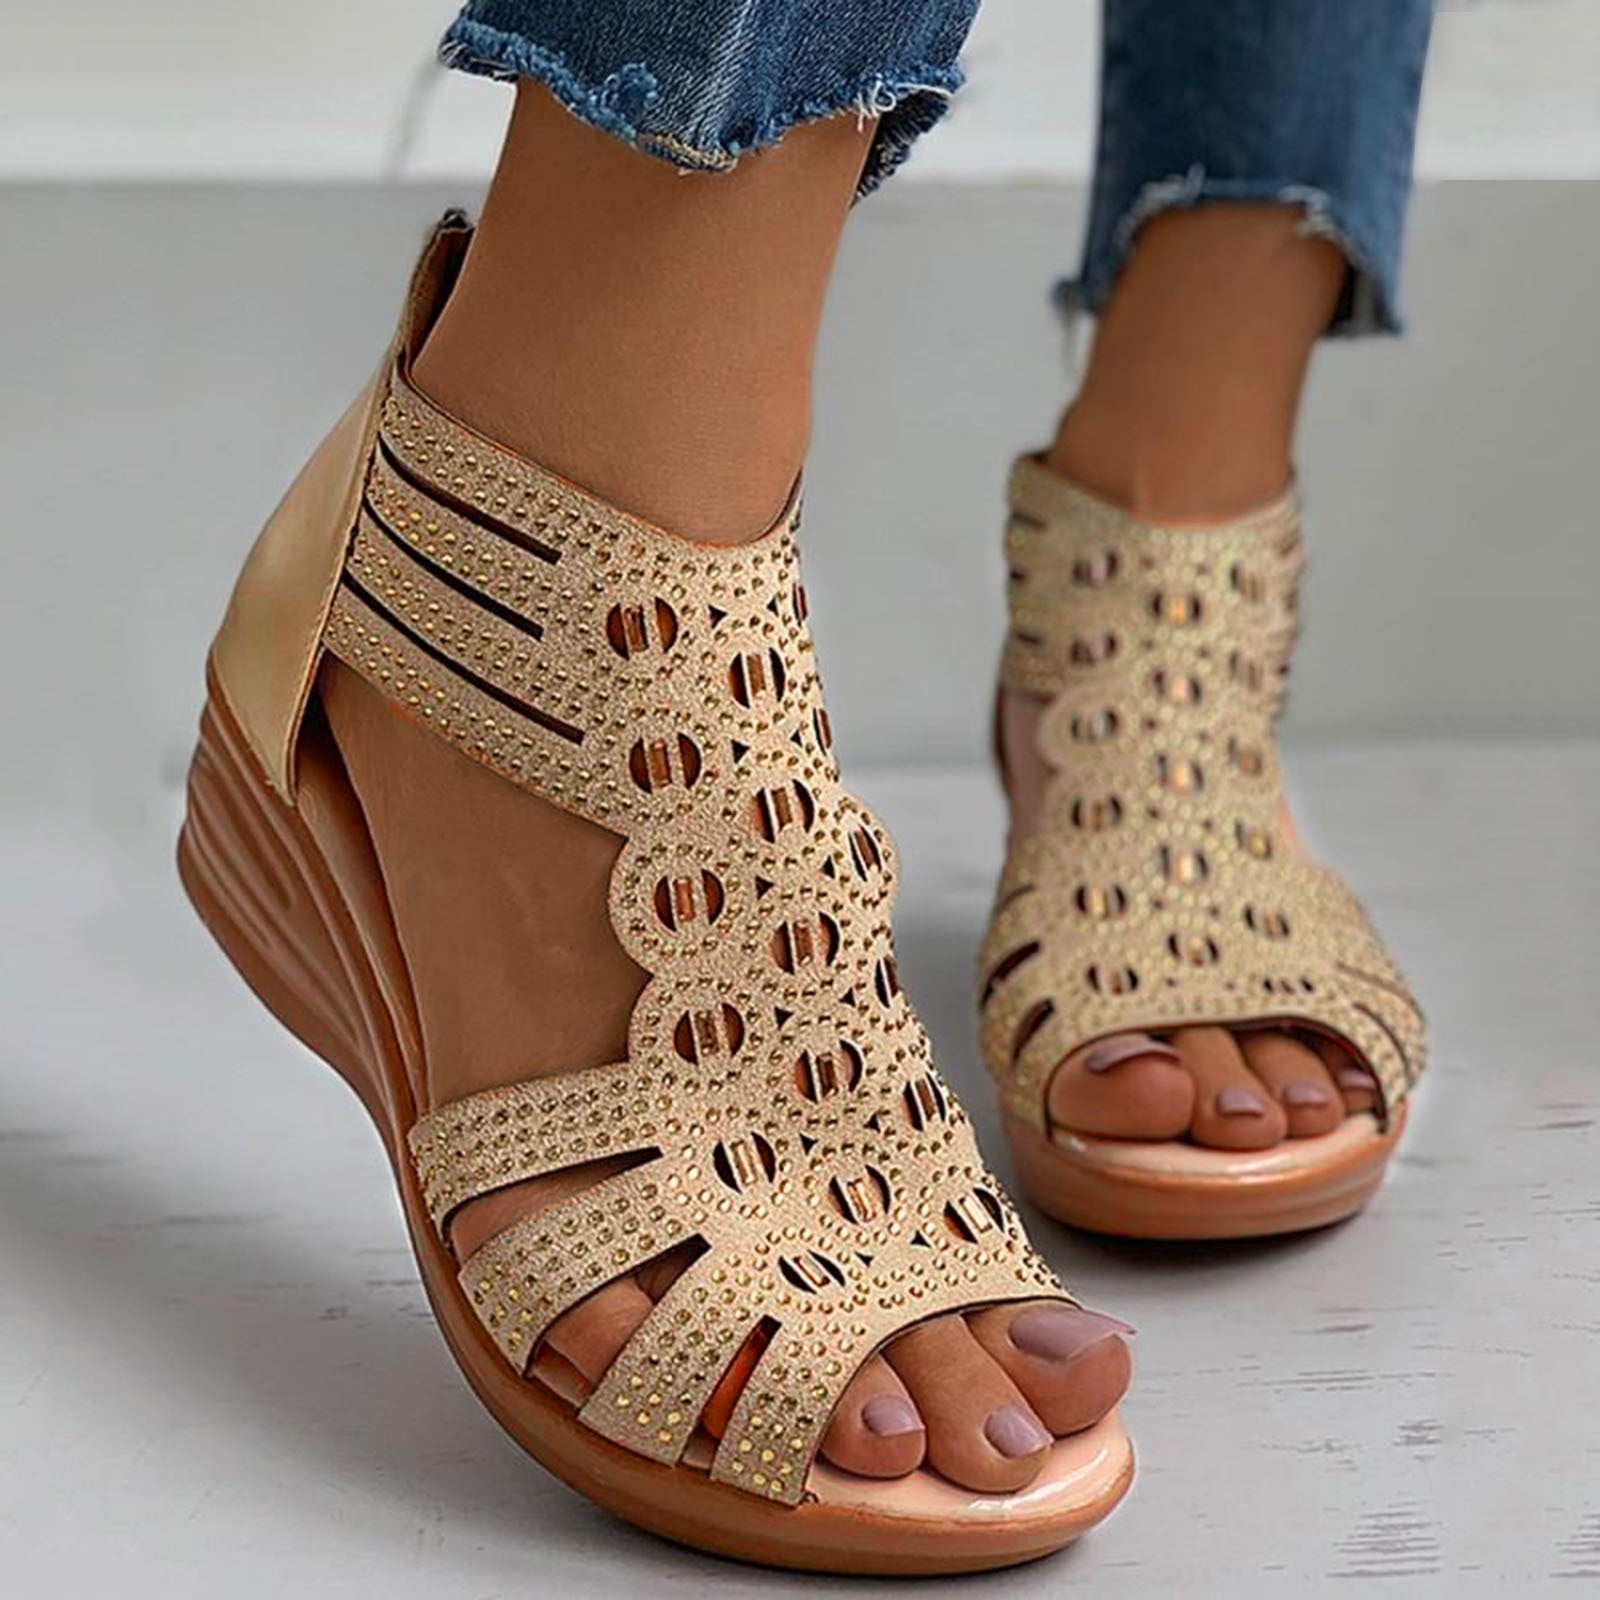 Shein Blue Jean Star Print Zip-Up Sandals Women's Size 11 NEW - beyond  exchange